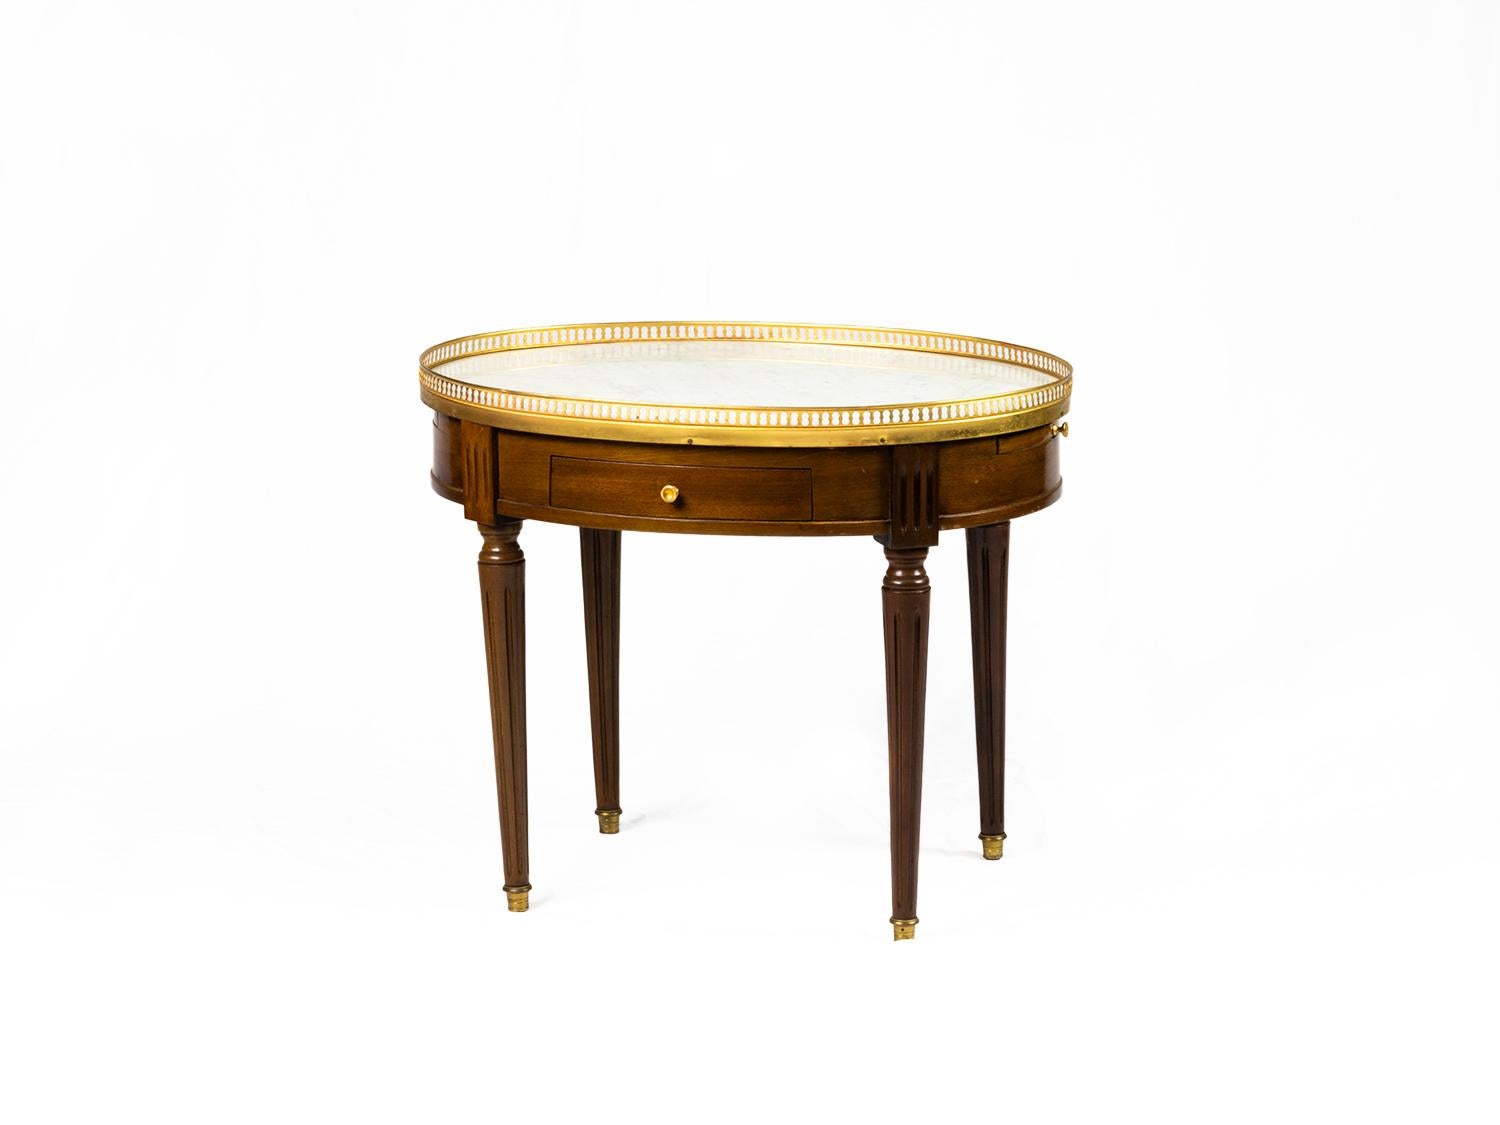 Unique table d'appoint ovale en acajou de style Louis XVI du 19ème siècle, Bouillotte.
Dessus en marbre, rail doré, deux tiroirs et extensions de chaque côté pour les verres avec doublure en cuir.